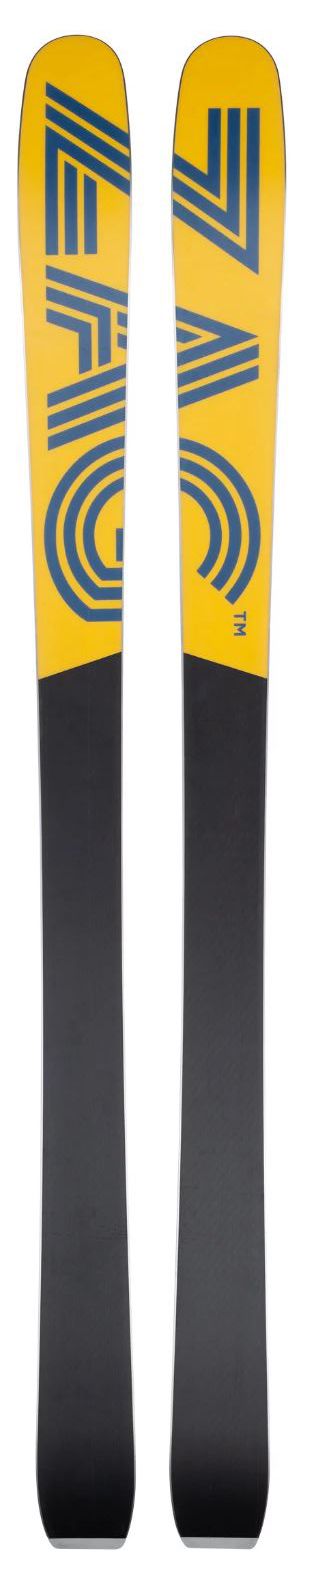 Bâtons de skis Marcel Livet, bâtons en aluminium noir